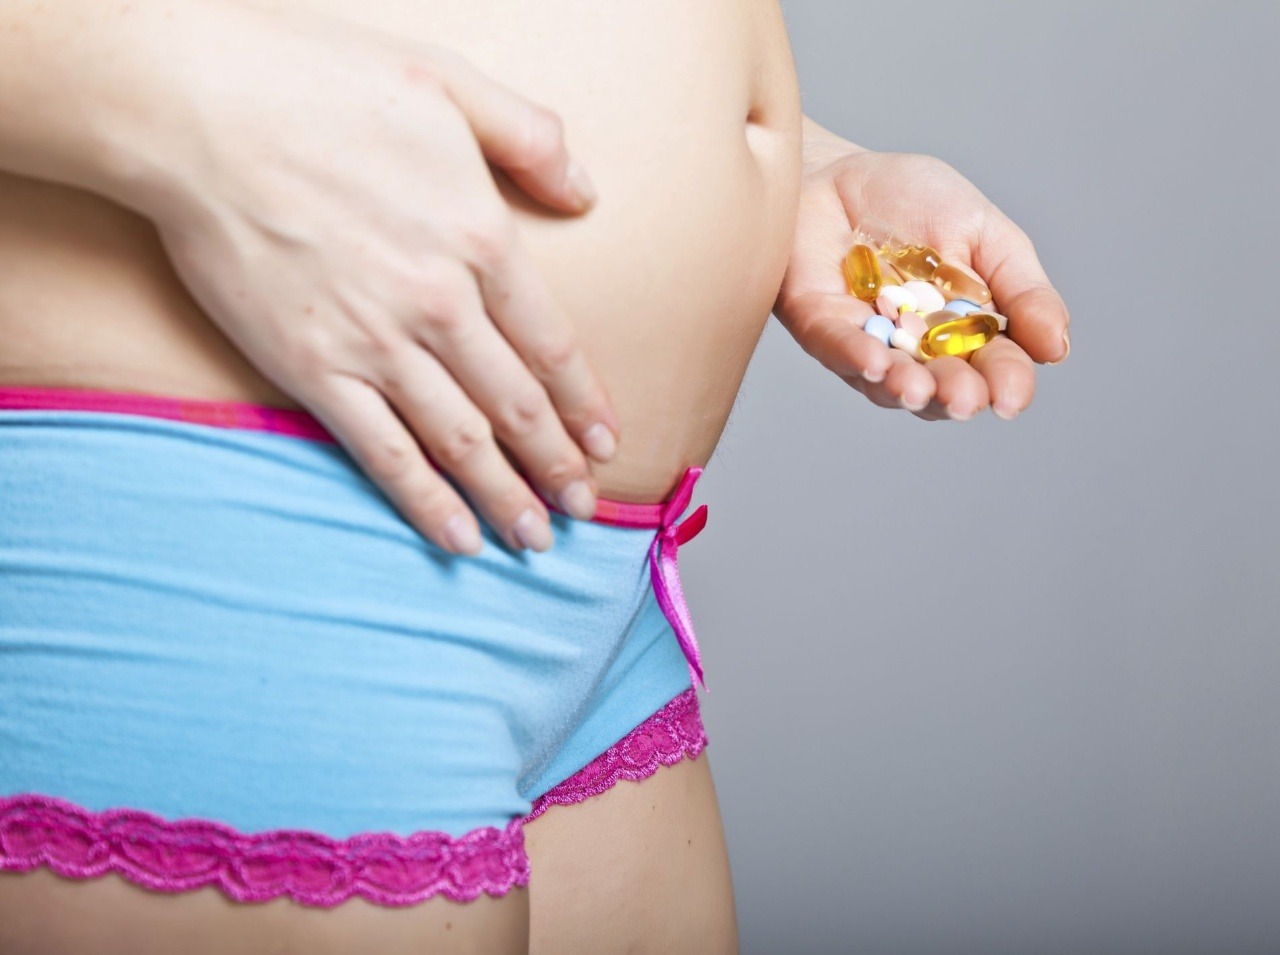 Tehotné ženy by najlepšie nemali brať žiadne lieky!